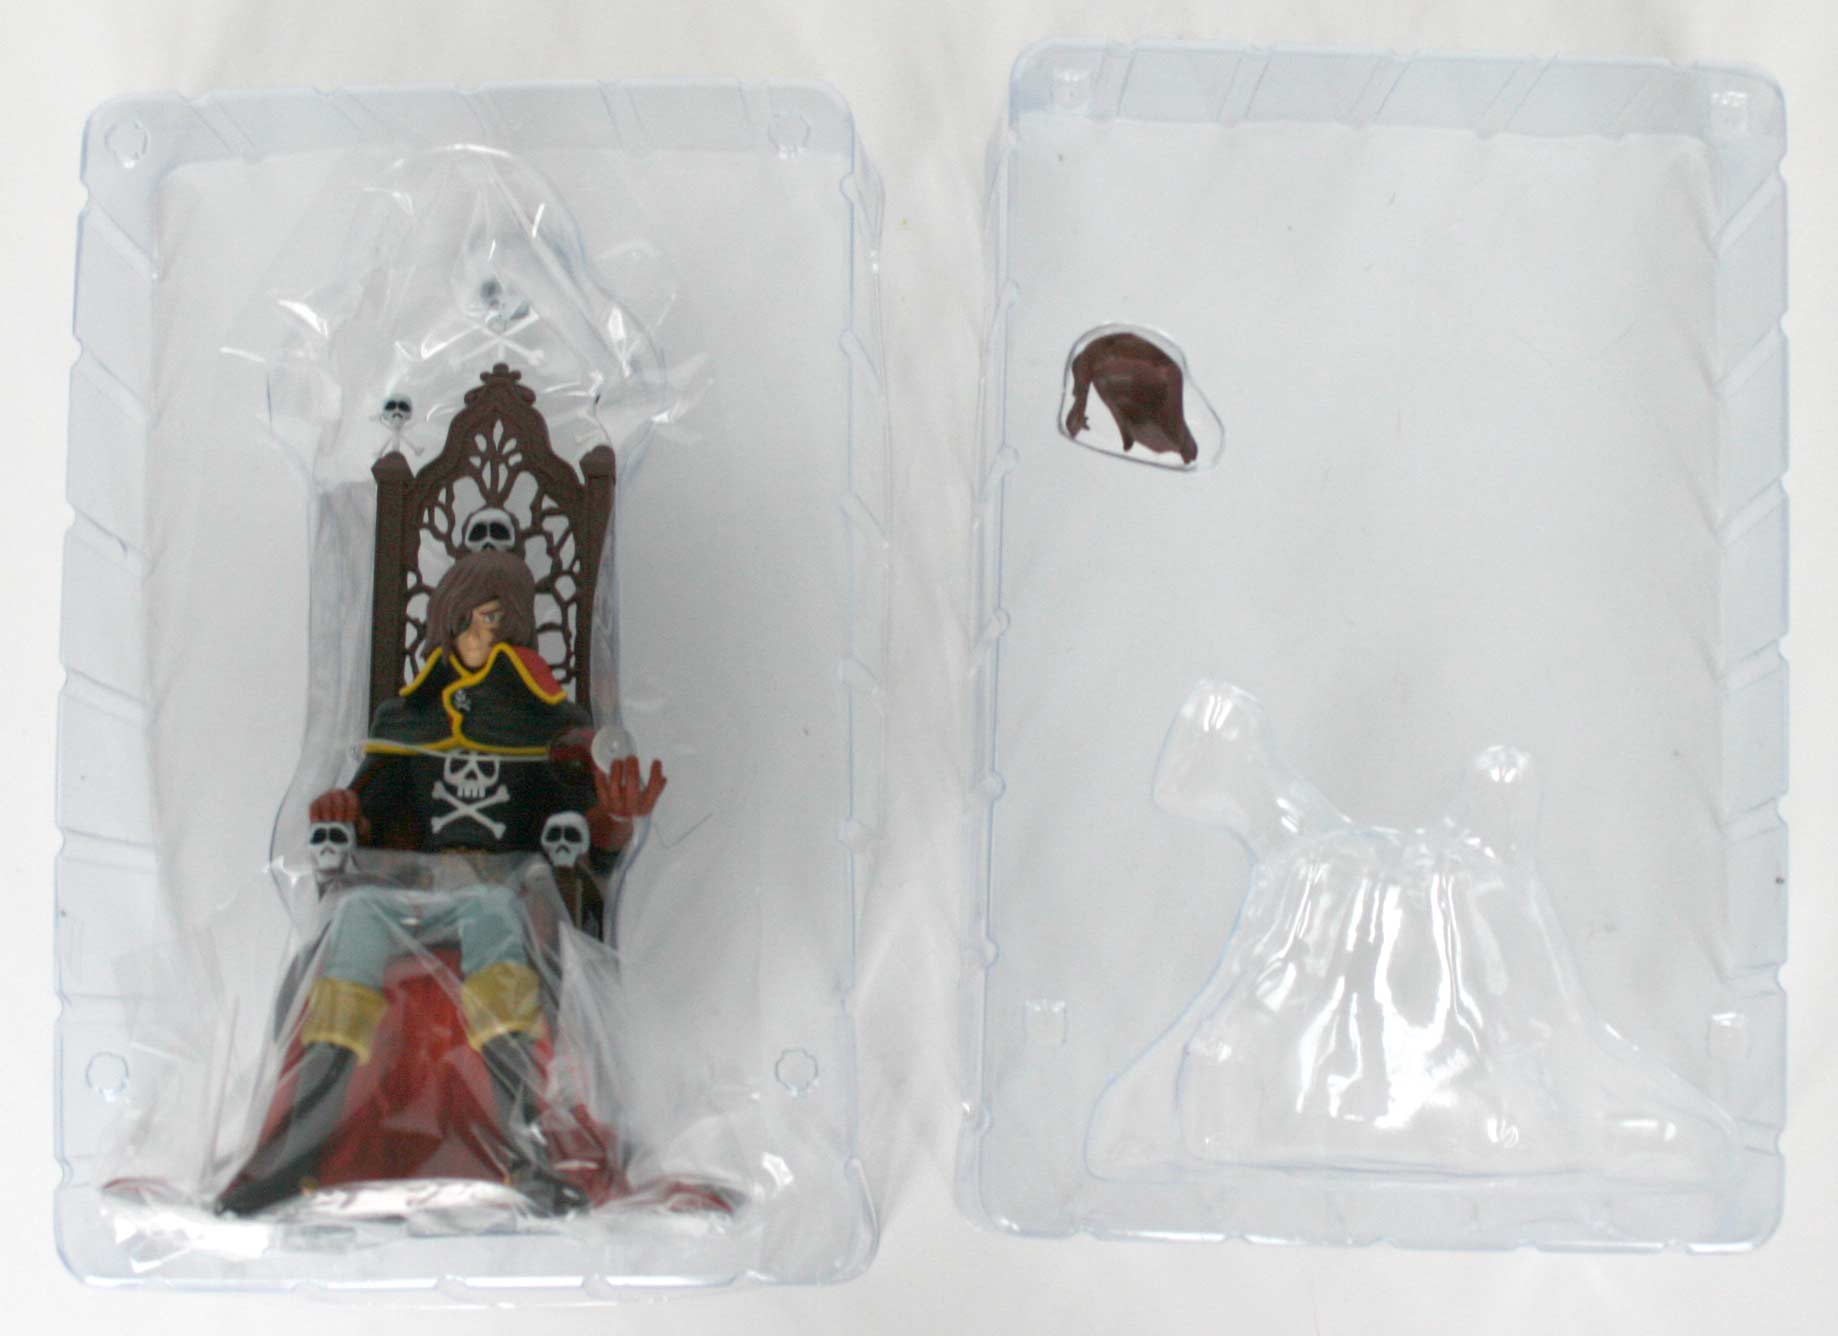 les deux morceaux de plastique qui maintiennent la figurine dans la boîte sont simplement emboîtés,